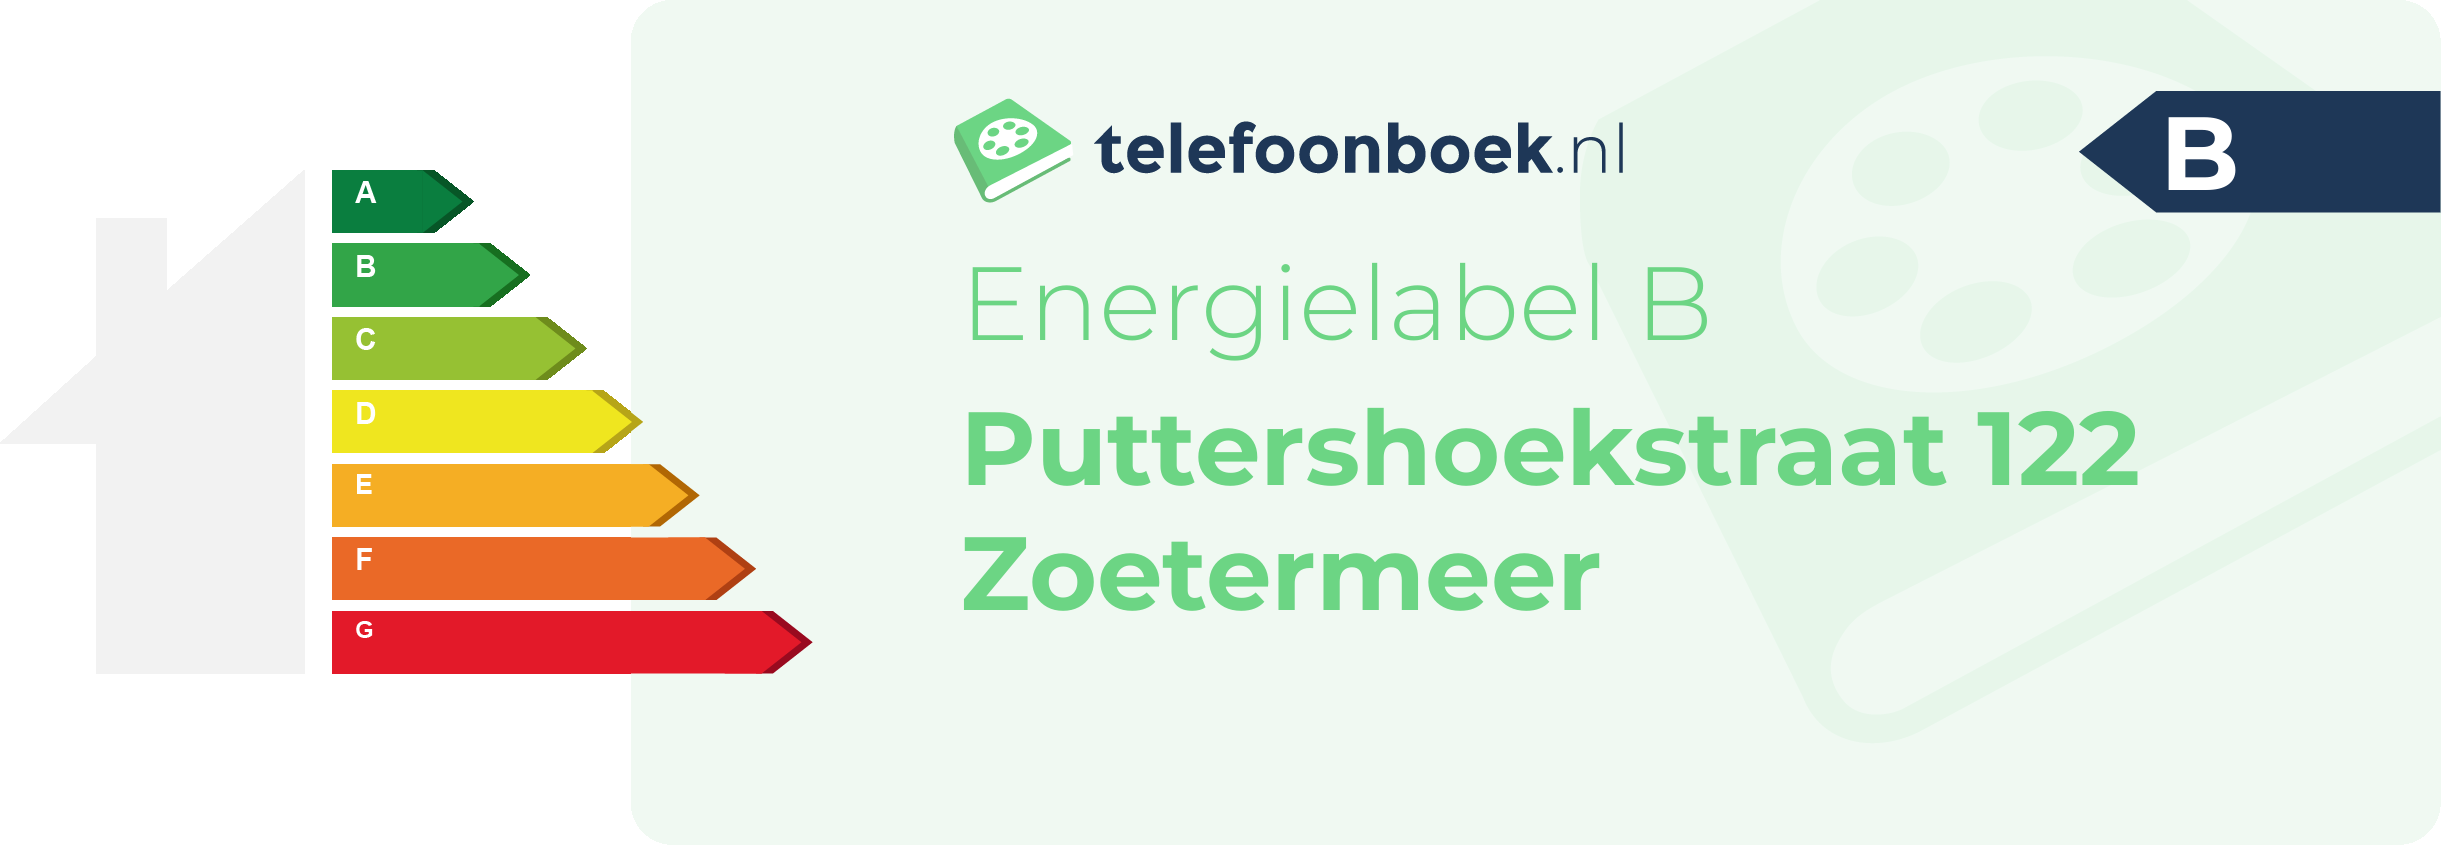 Energielabel Puttershoekstraat 122 Zoetermeer